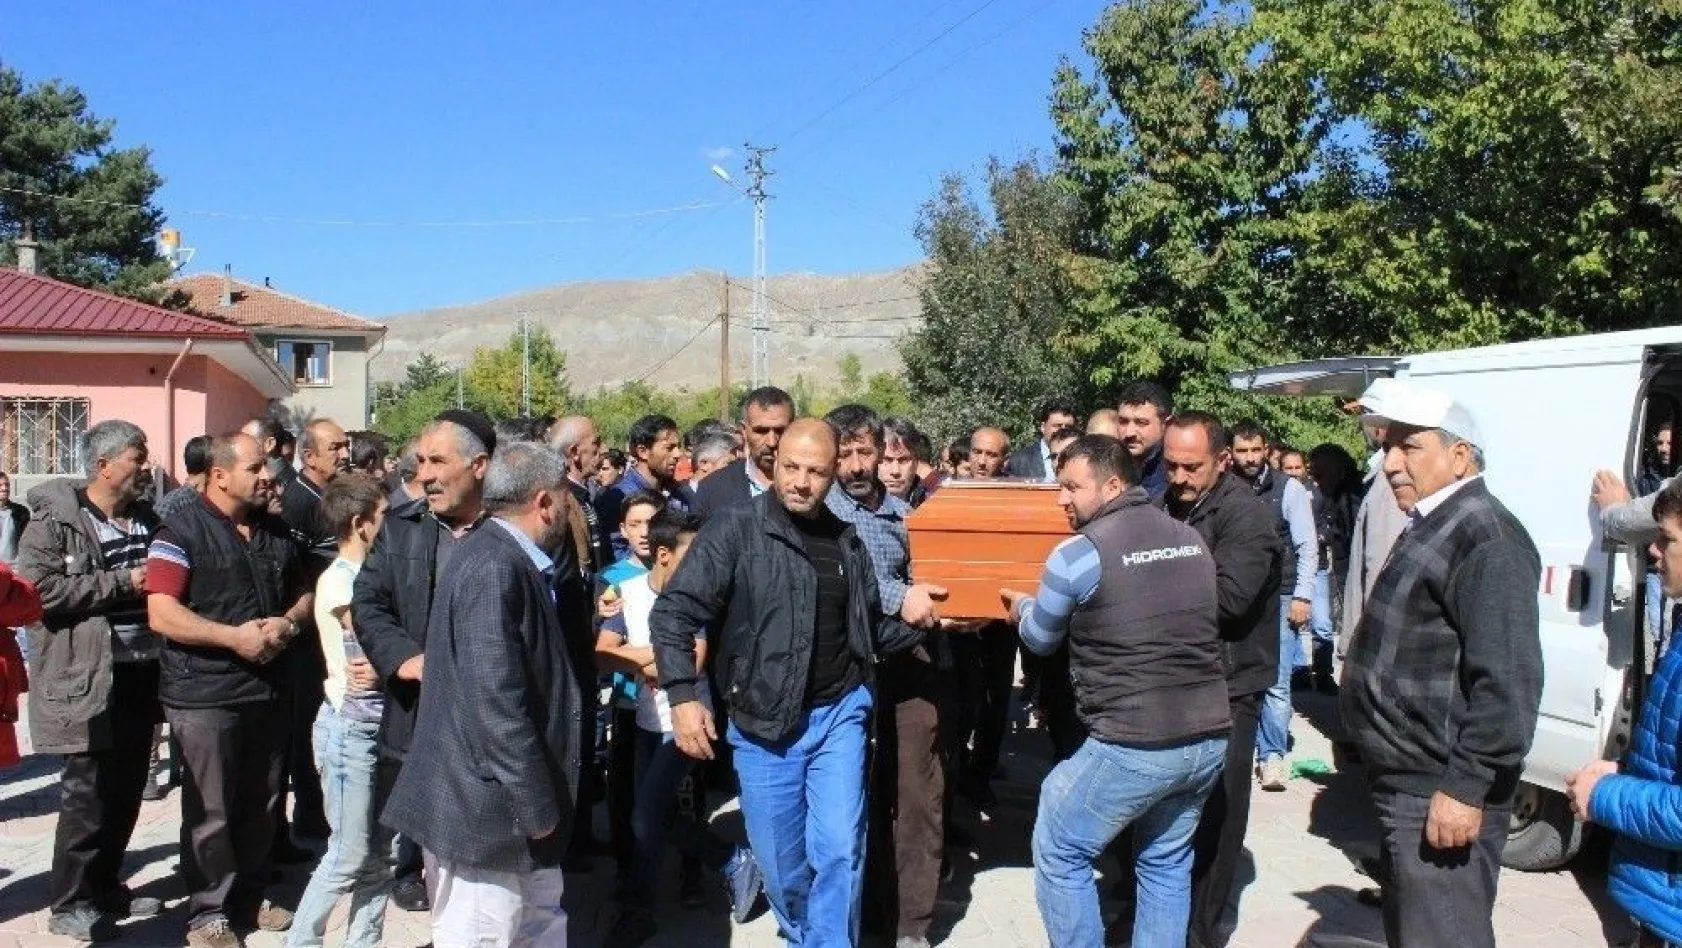 Fransa'daki yangında ölen Nihal Ertunç, Erzincan'da defnedildi
